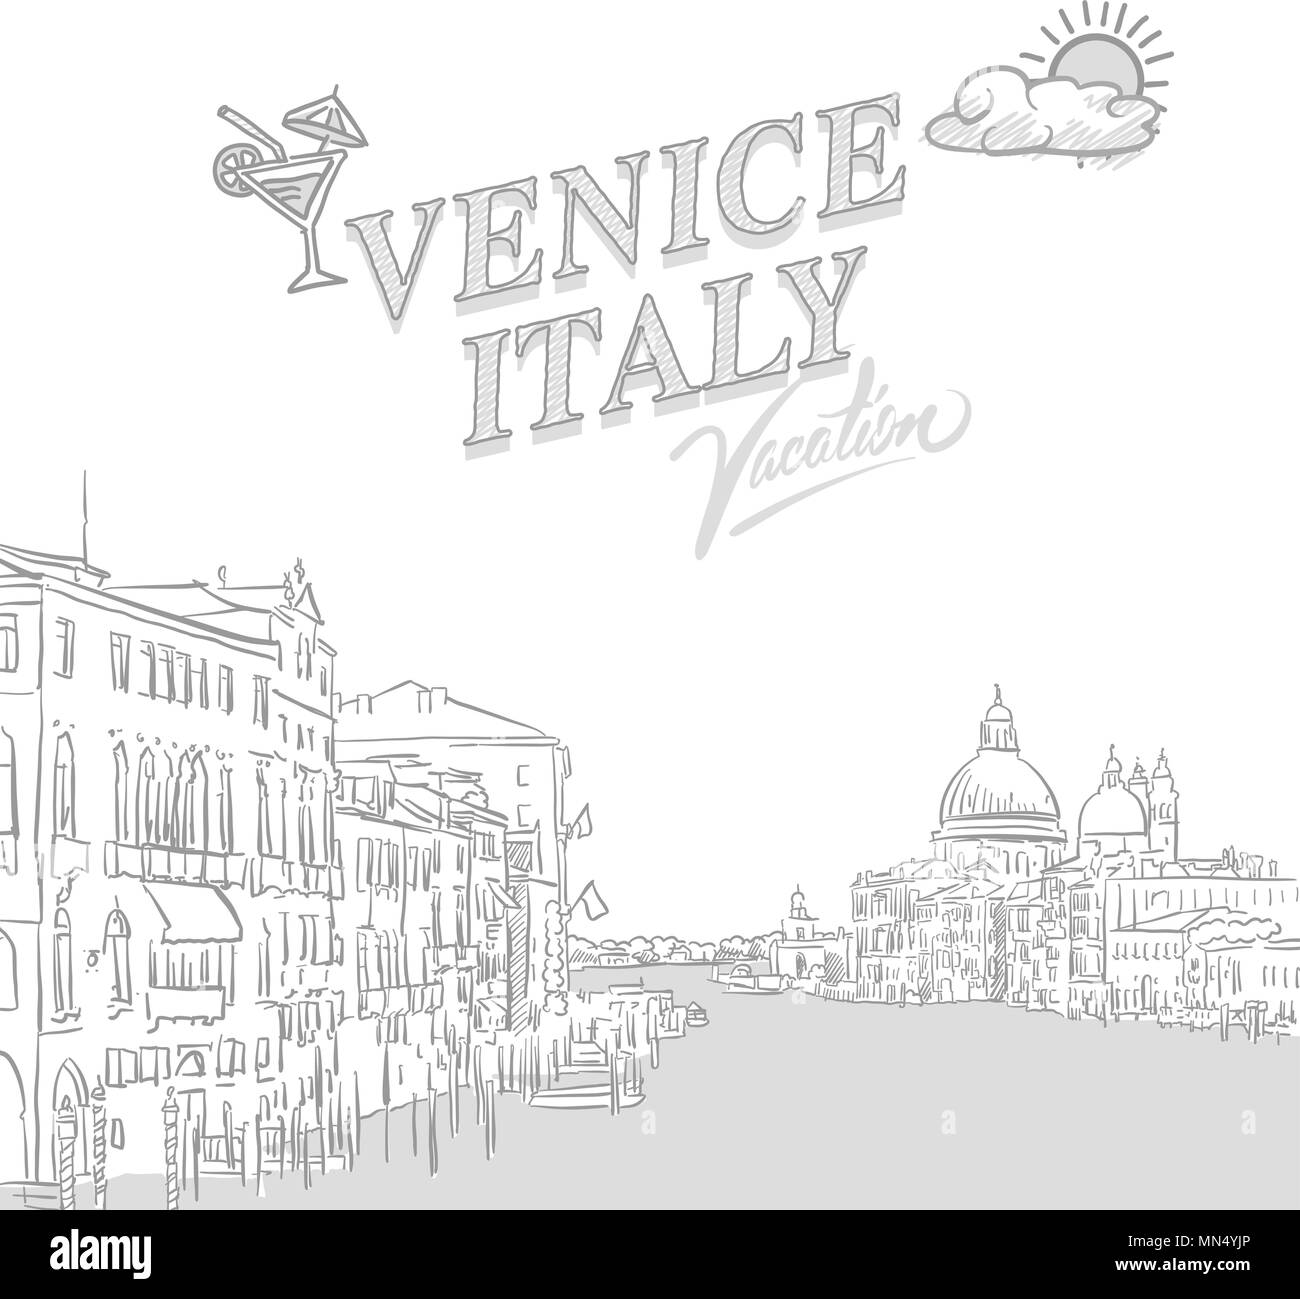 Venise voyage couverture marketing, ensemble de croquis dessinés à la main, un vecteur Illustration de Vecteur